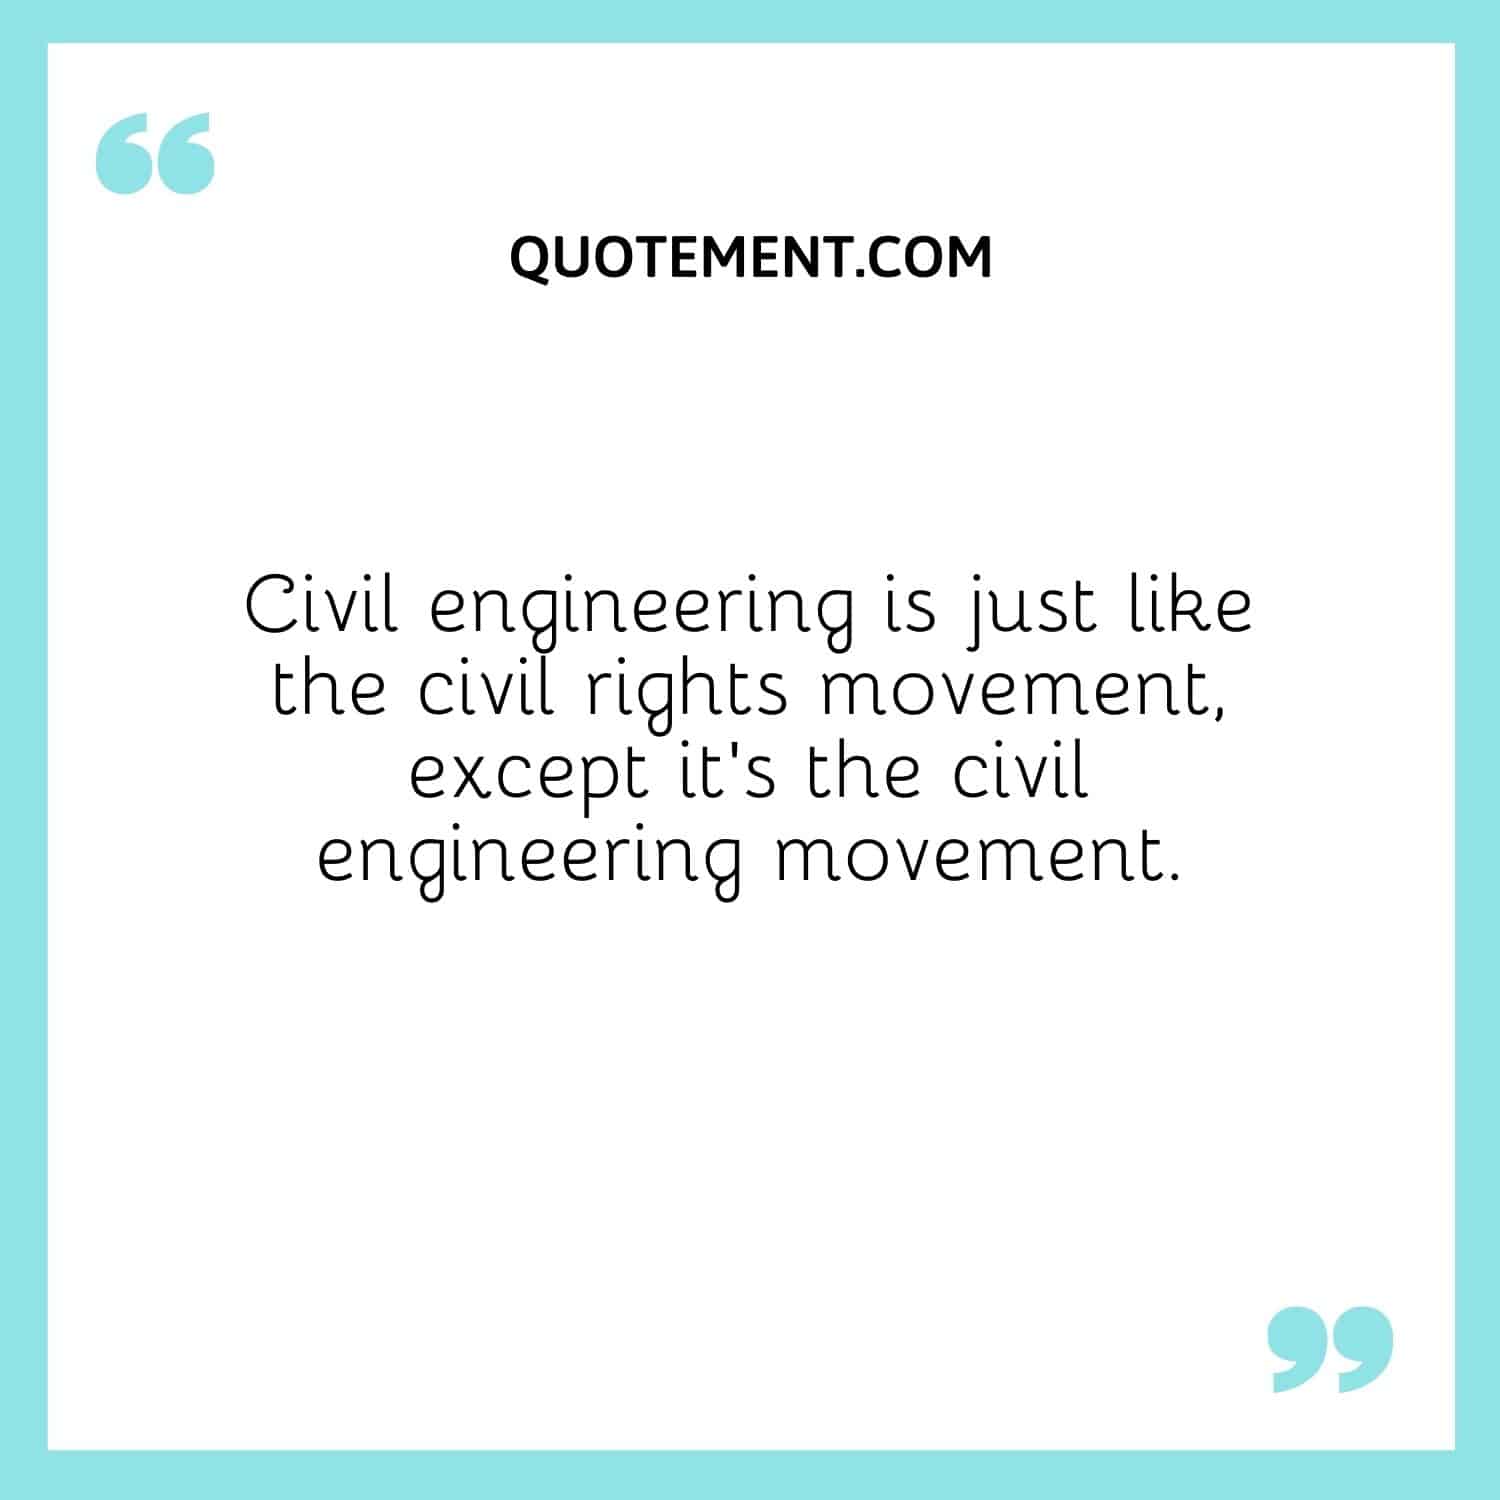 La ingeniería civil es como el movimiento por los derechos civiles, salvo que es el movimiento de la ingeniería civil.